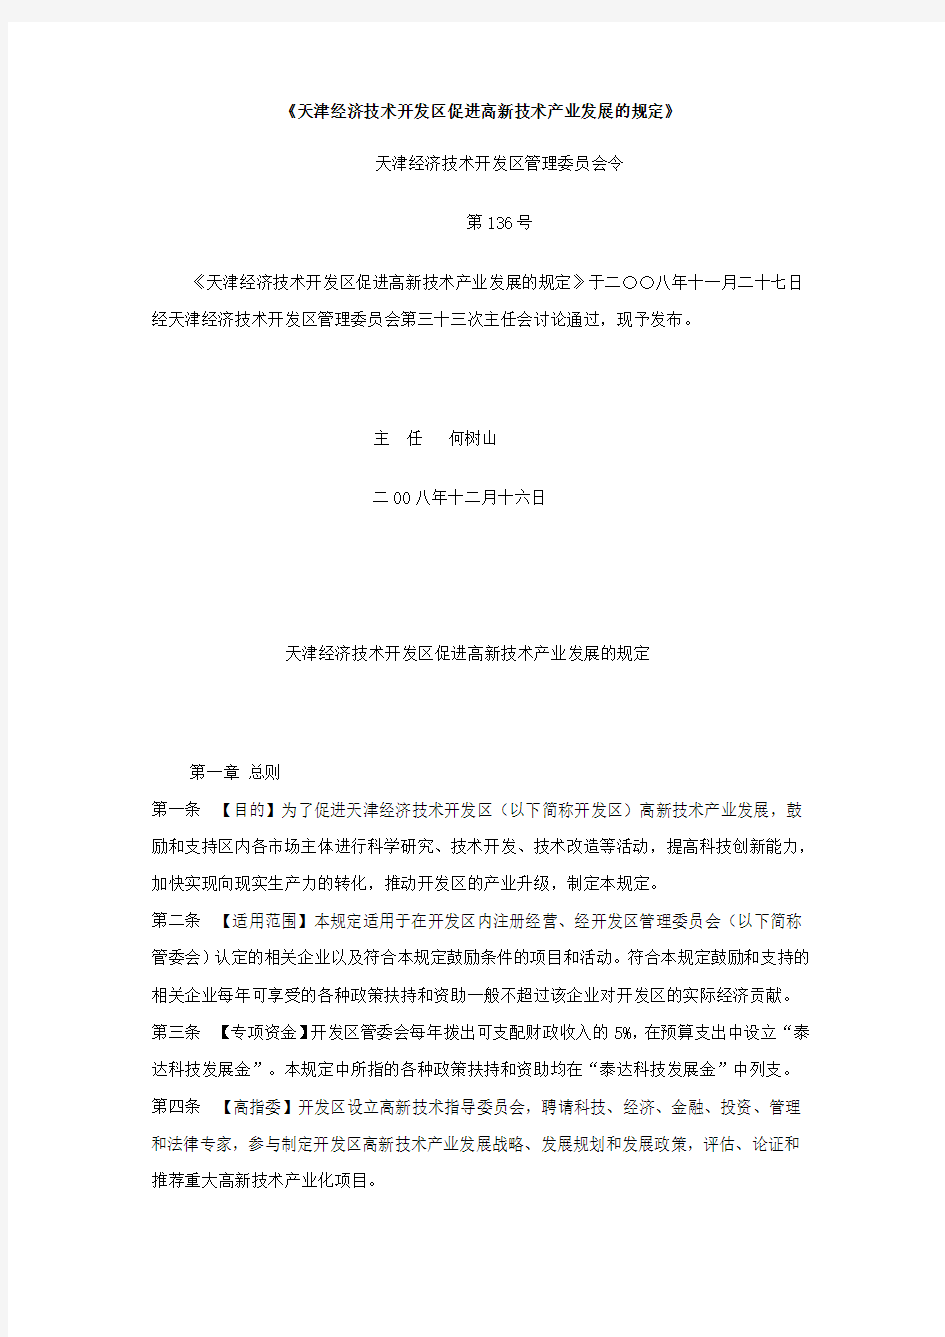 《天津经济技术开发区促进高新技术产业发展的规定》